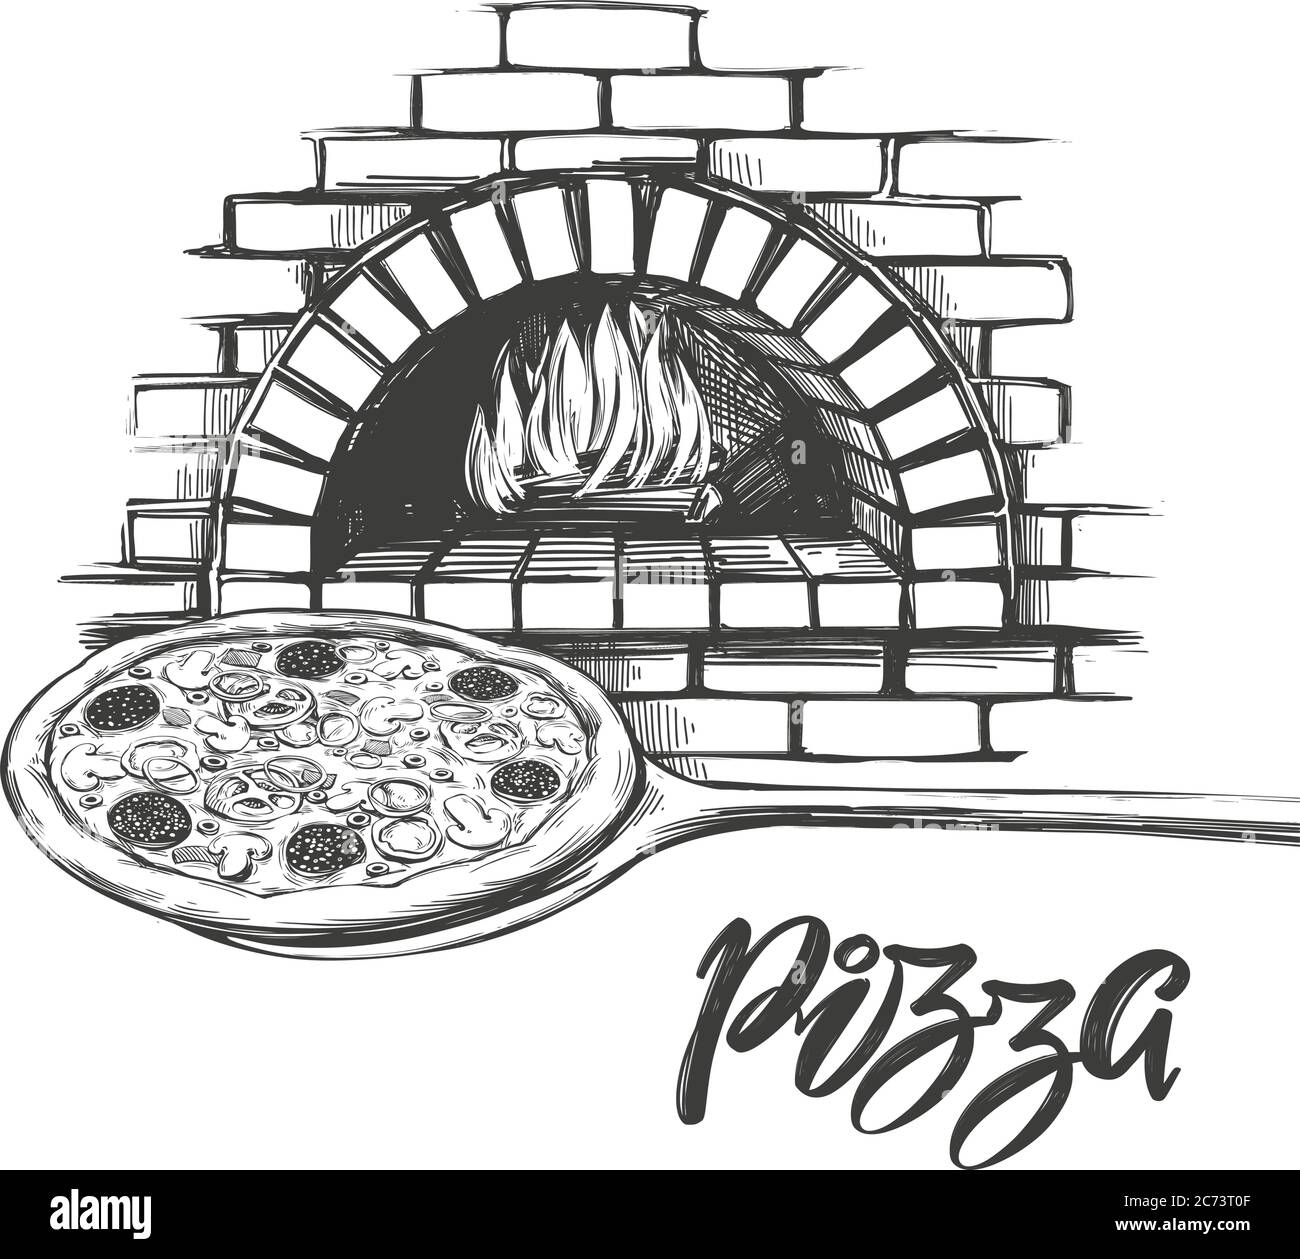 Pizza italienne, processus de cuisson de pizza, cuisson au feu, logo, dessin à la main illustration vectorielle croquis réaliste. Illustration de Vecteur